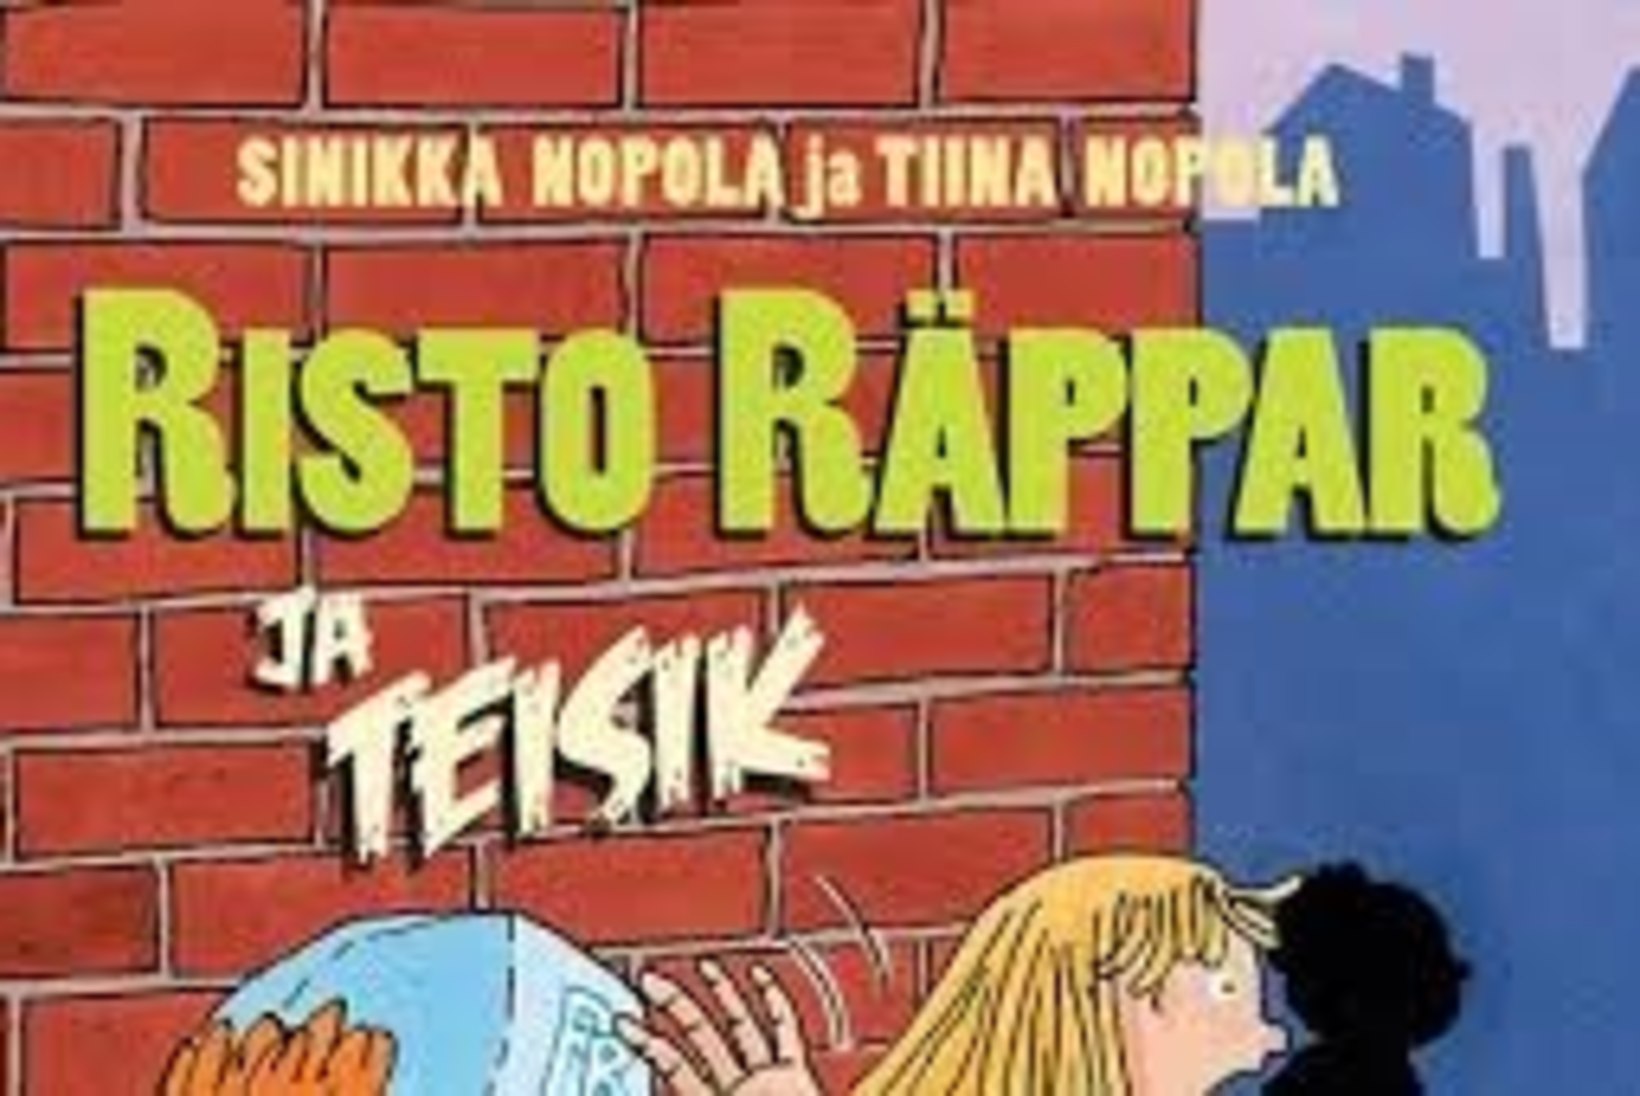 Suri Risto Räppari lugude autor Sinikka Nopola